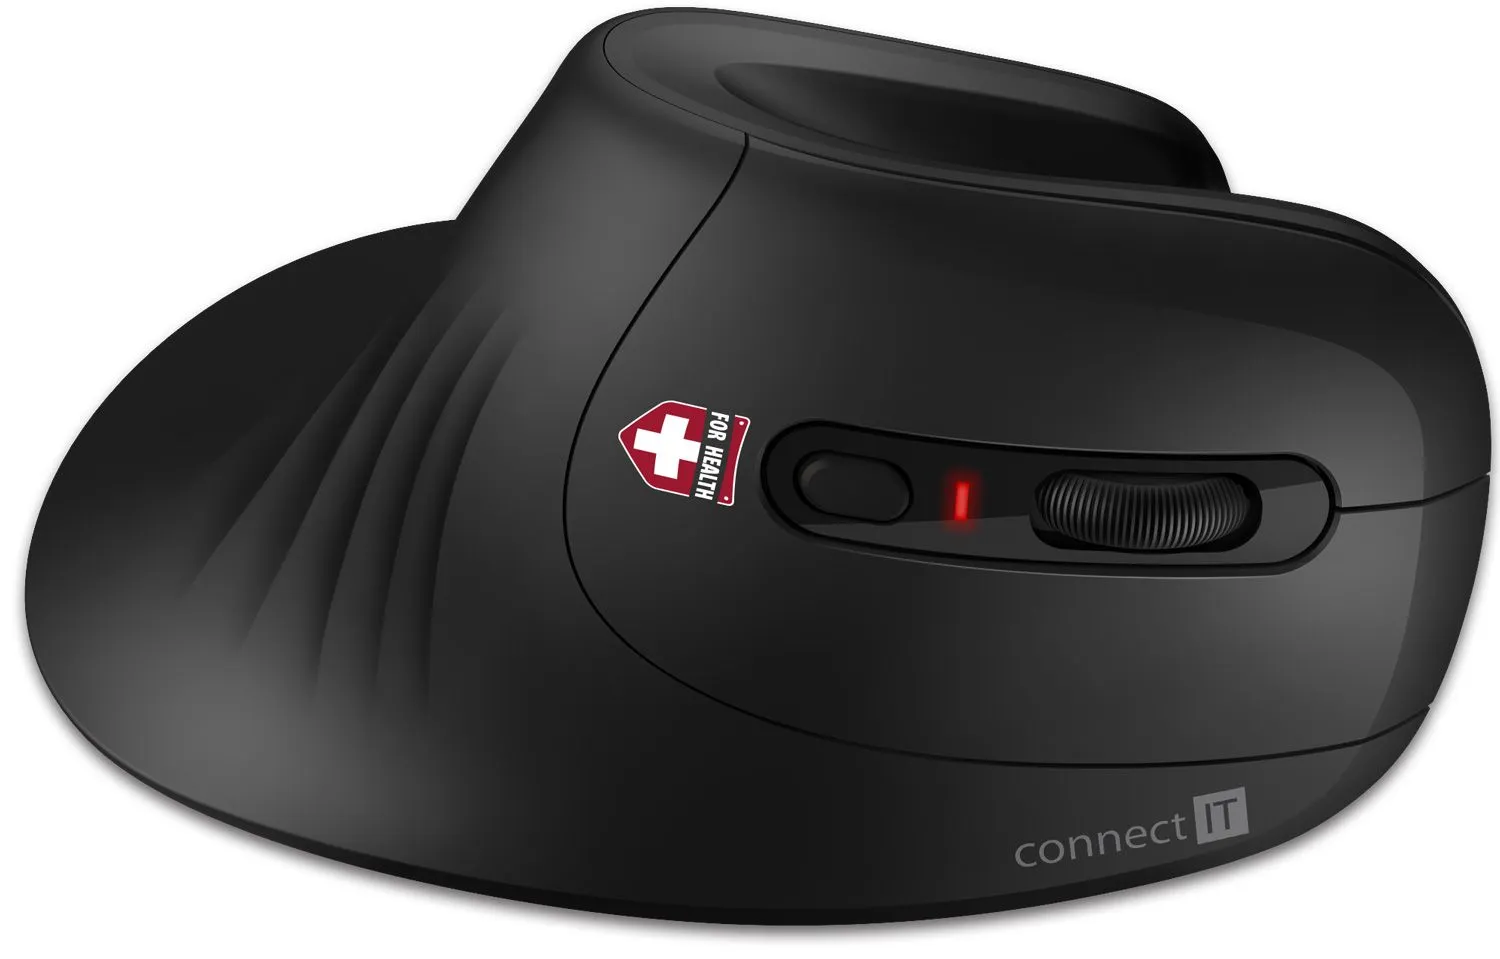 Connect IT For Health CMO-2900-BK ergonomická myš bezdrátová